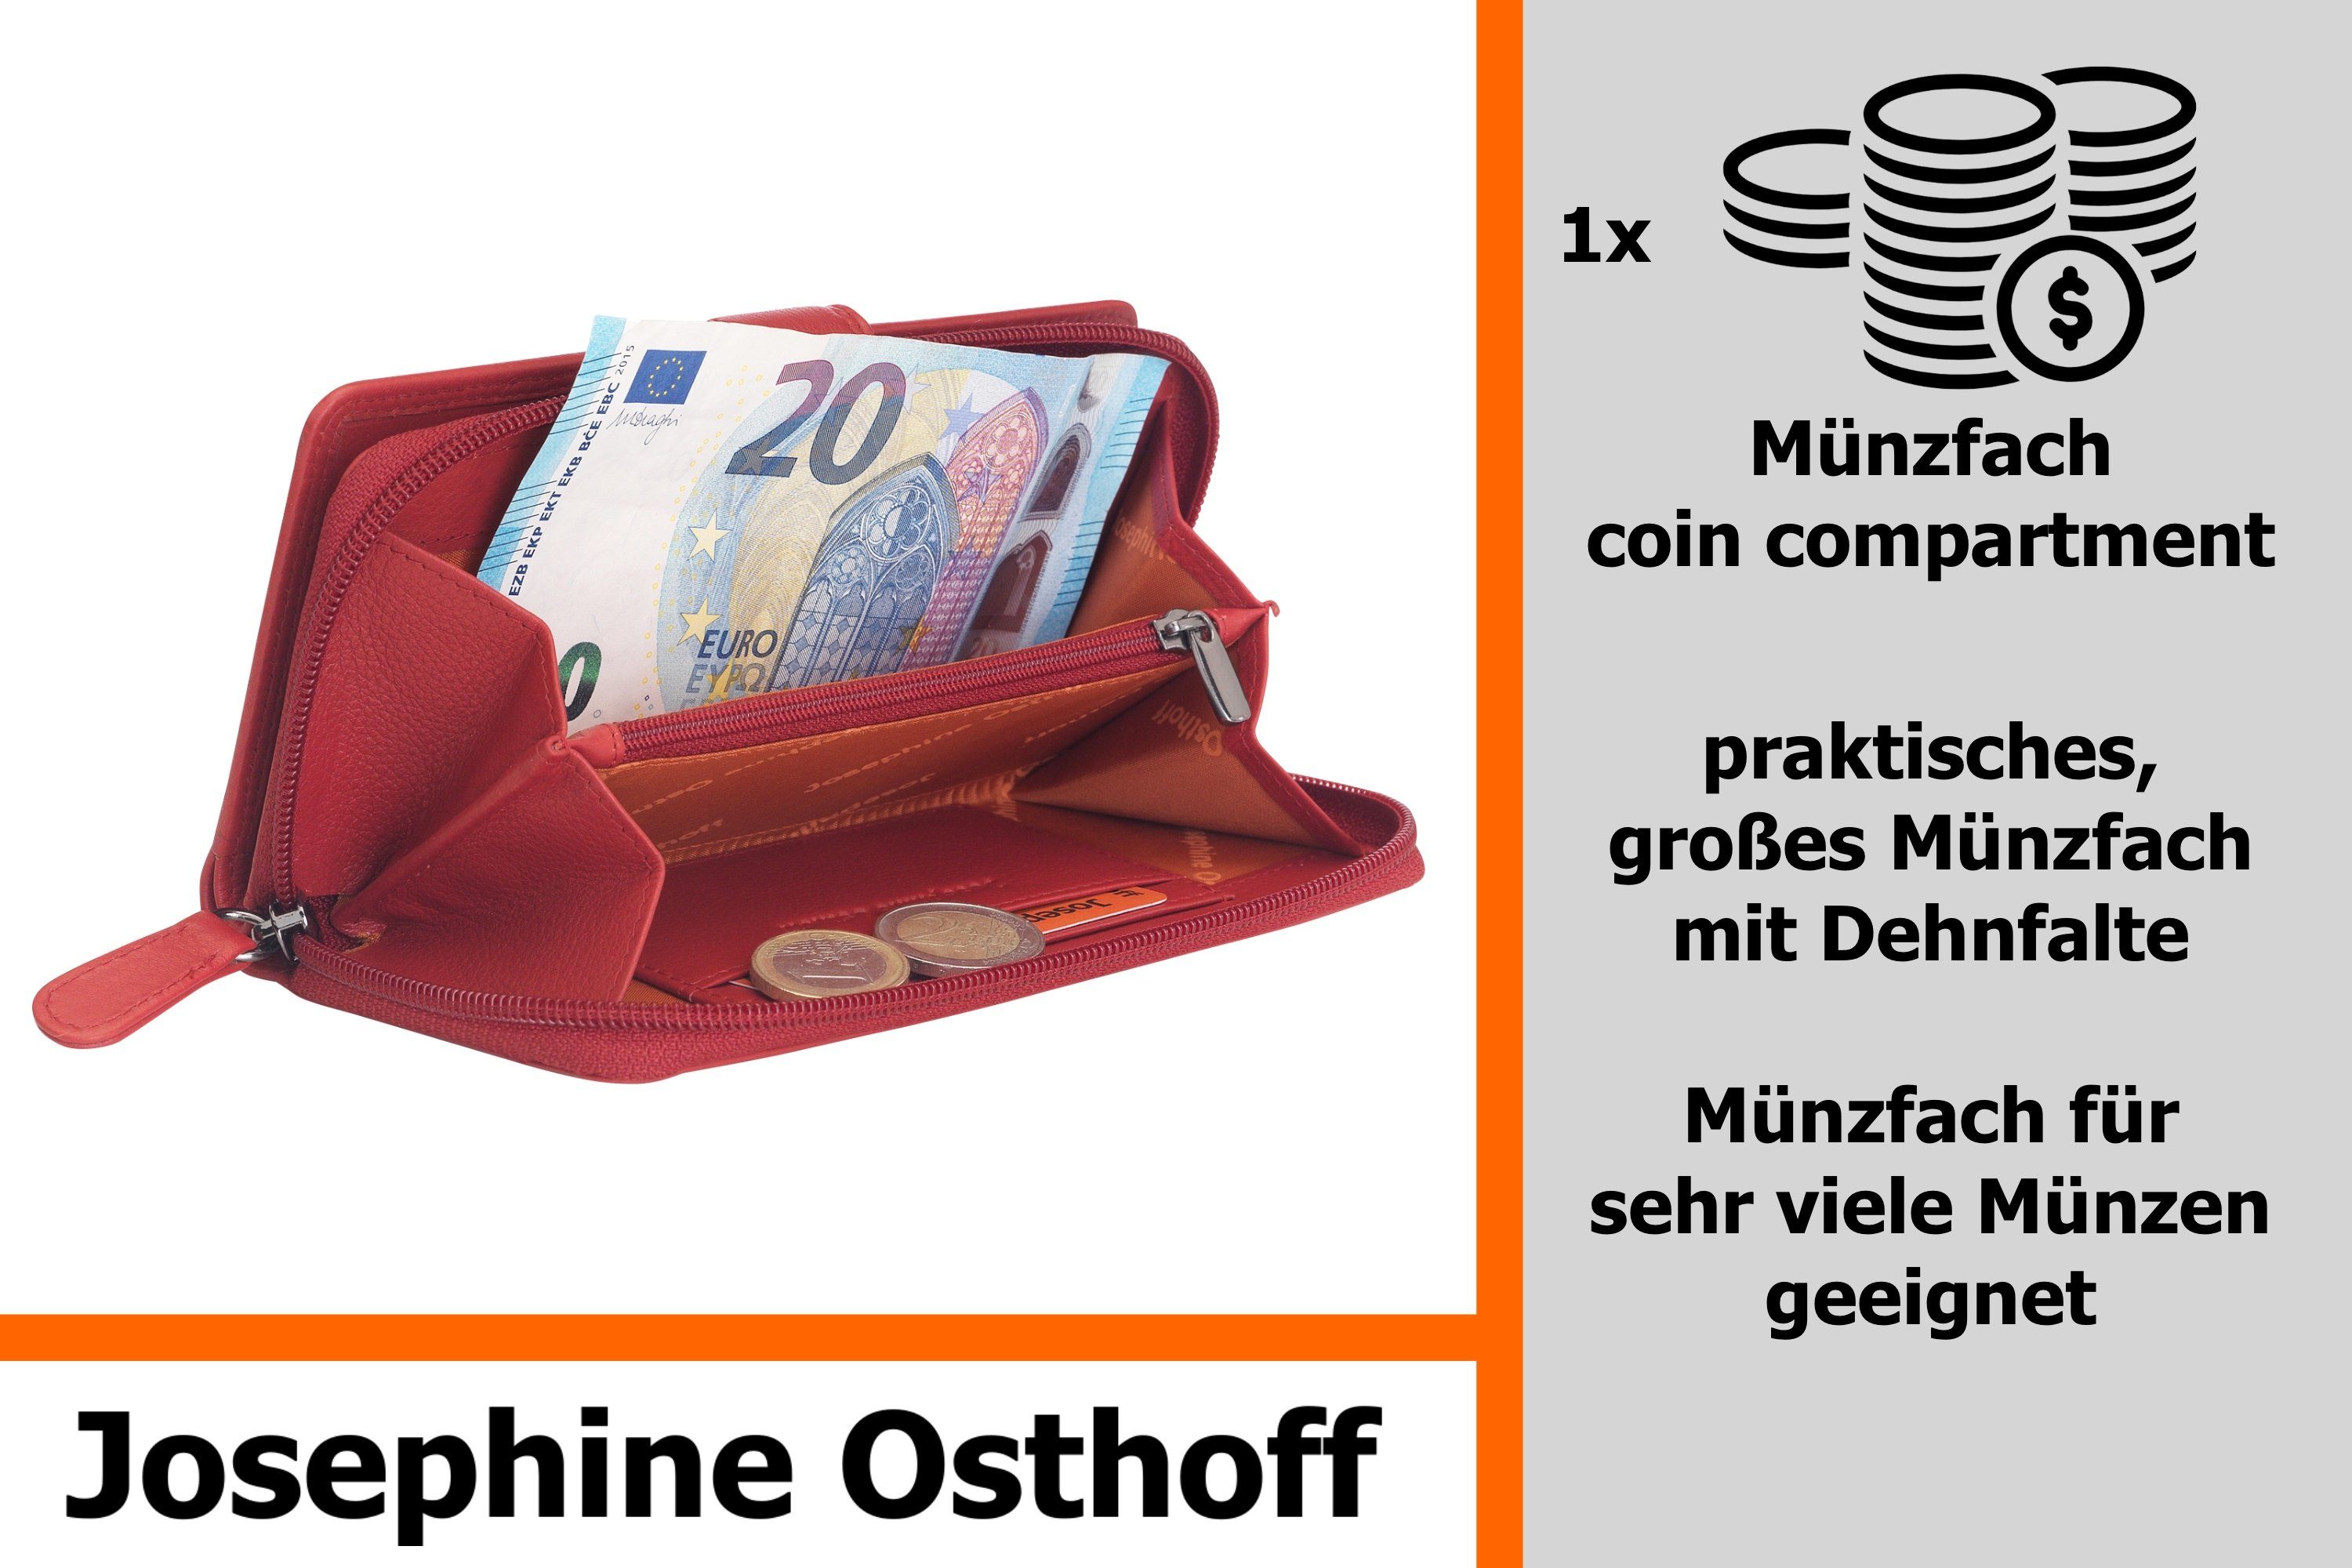 Osthoff Bremen kirsche Geldbörse kompakt Geldbörse Josephine